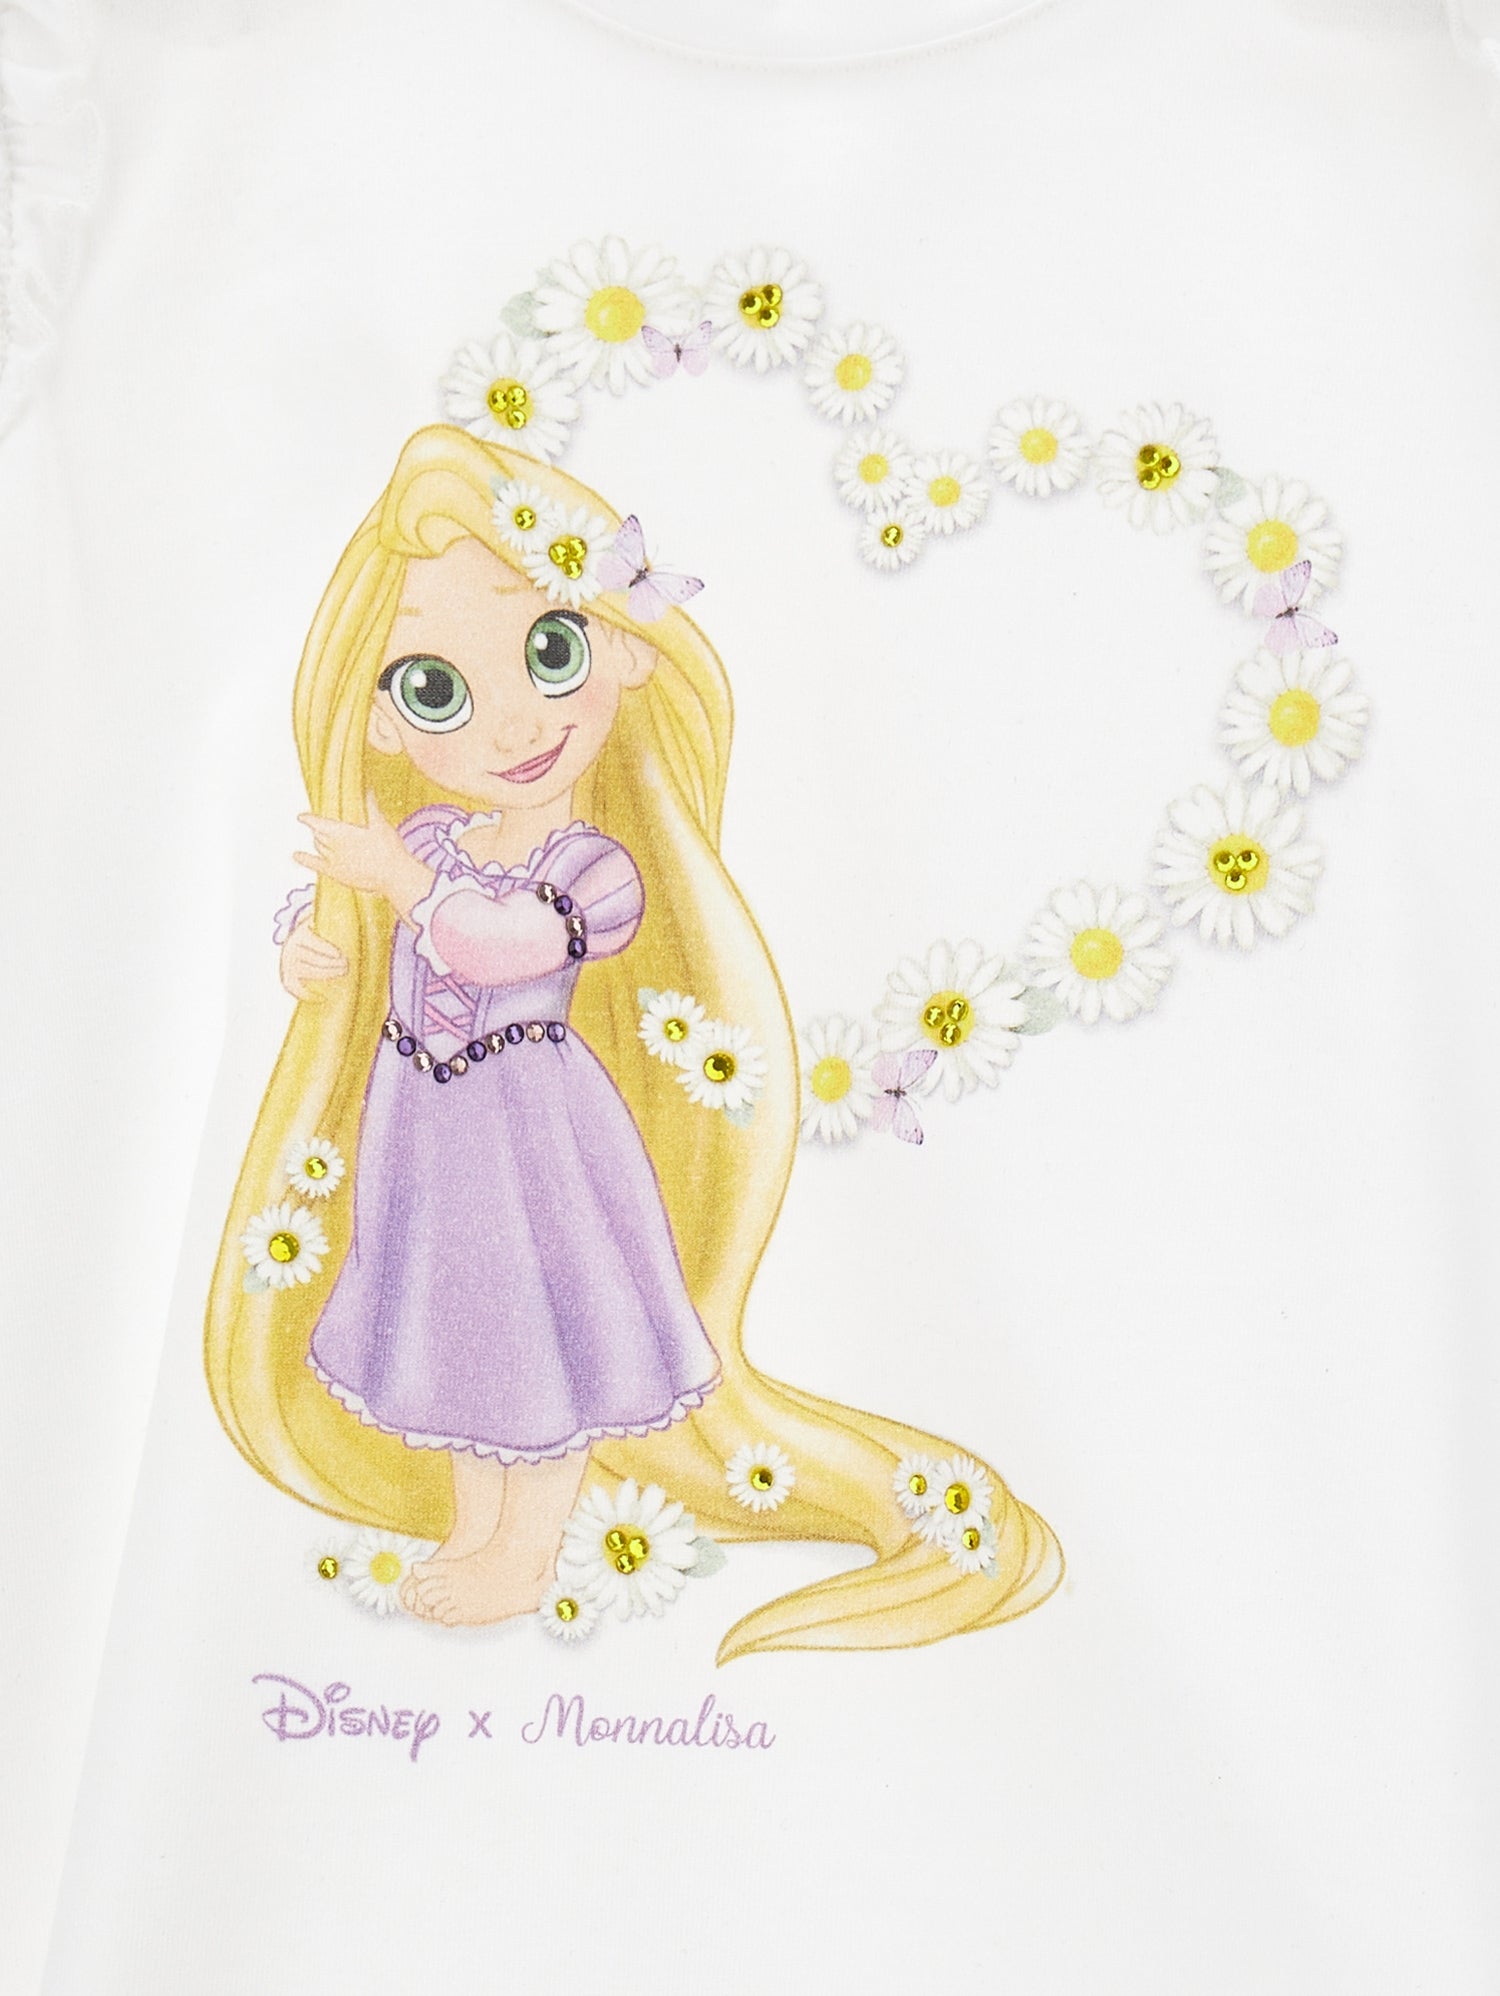 T-shirt jersey Rapunzel